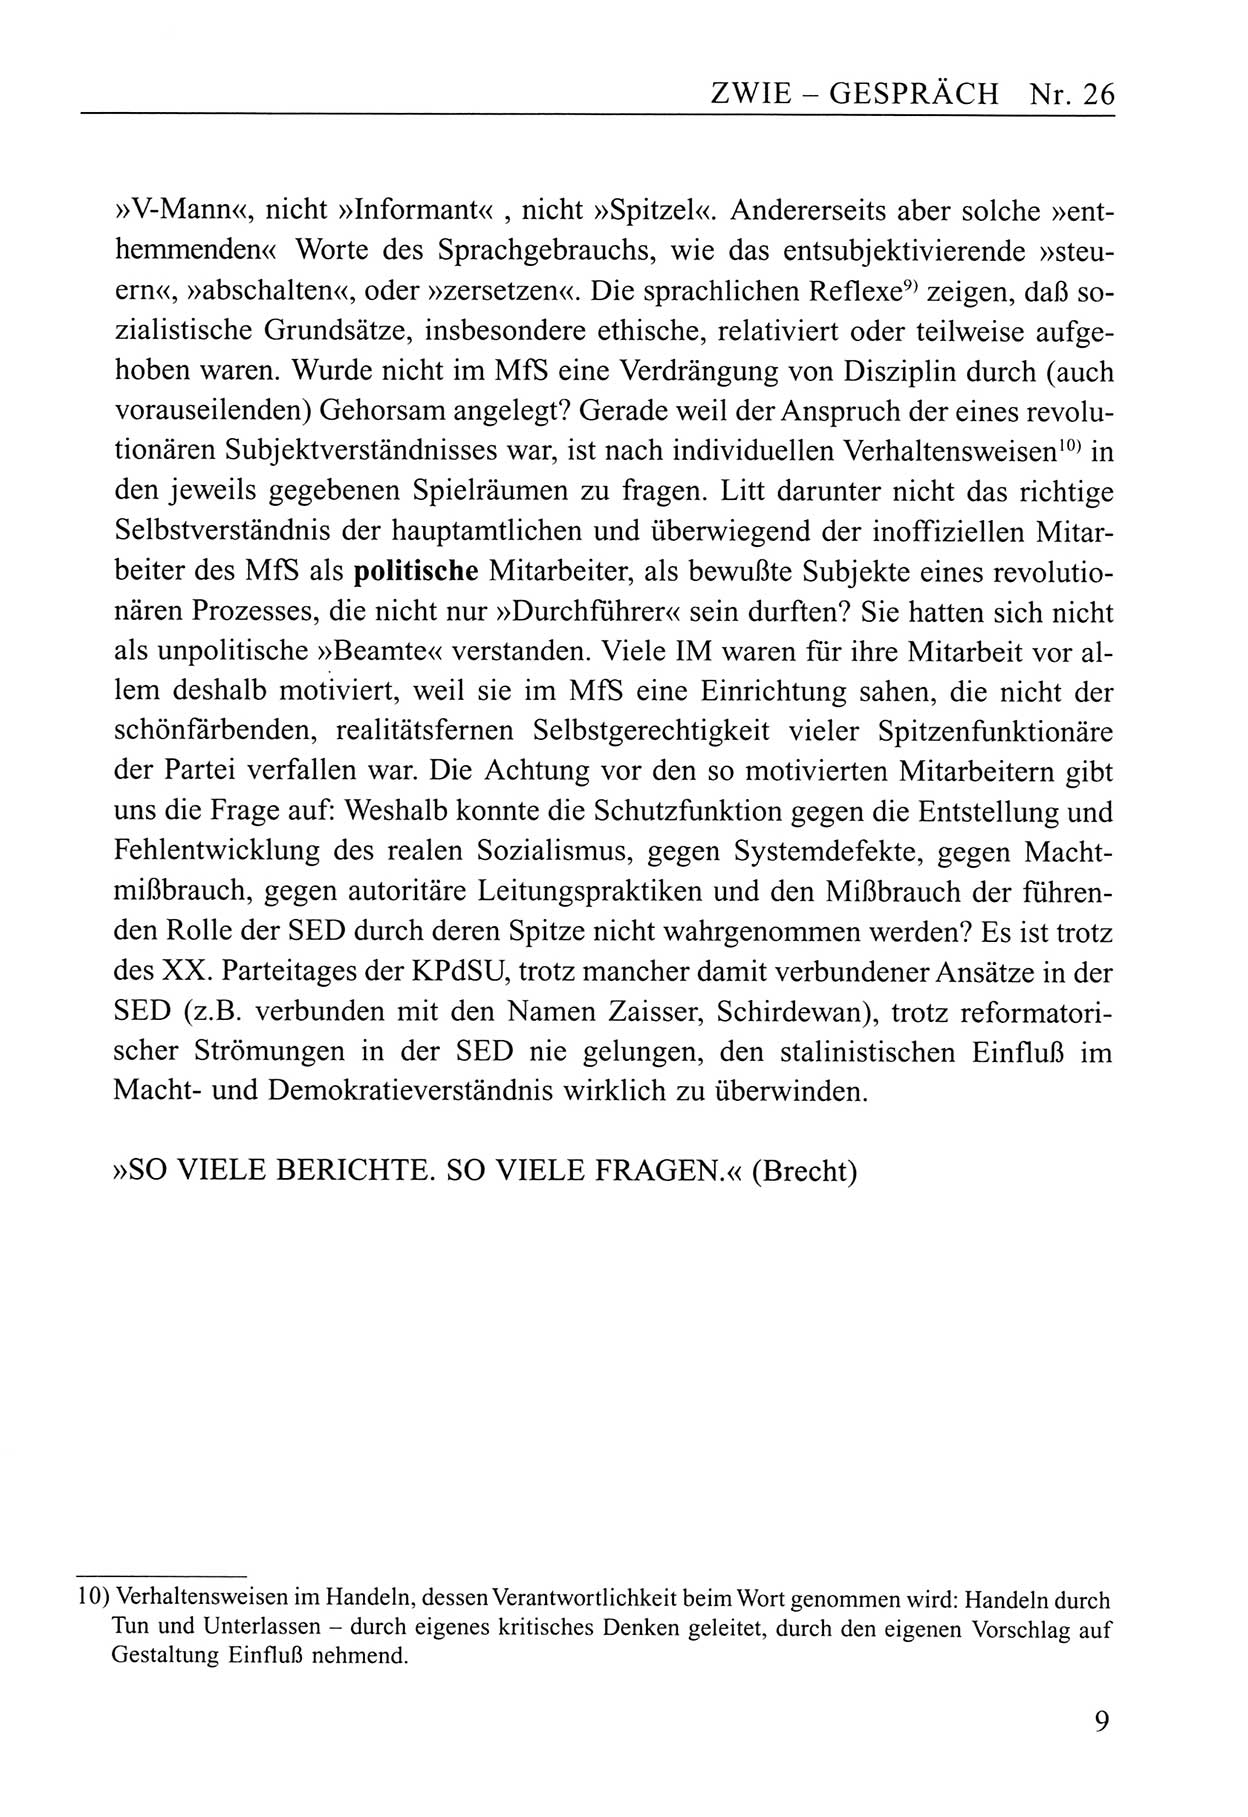 Zwie-Gespräch, Beiträge zum Umgang mit der Staatssicherheits-Vergangenheit [Deutsche Demokratische Republik (DDR)], Ausgabe Nr. 26, Berlin 1995, Seite 9 (Zwie-Gespr. Ausg. 26 1995, S. 9)